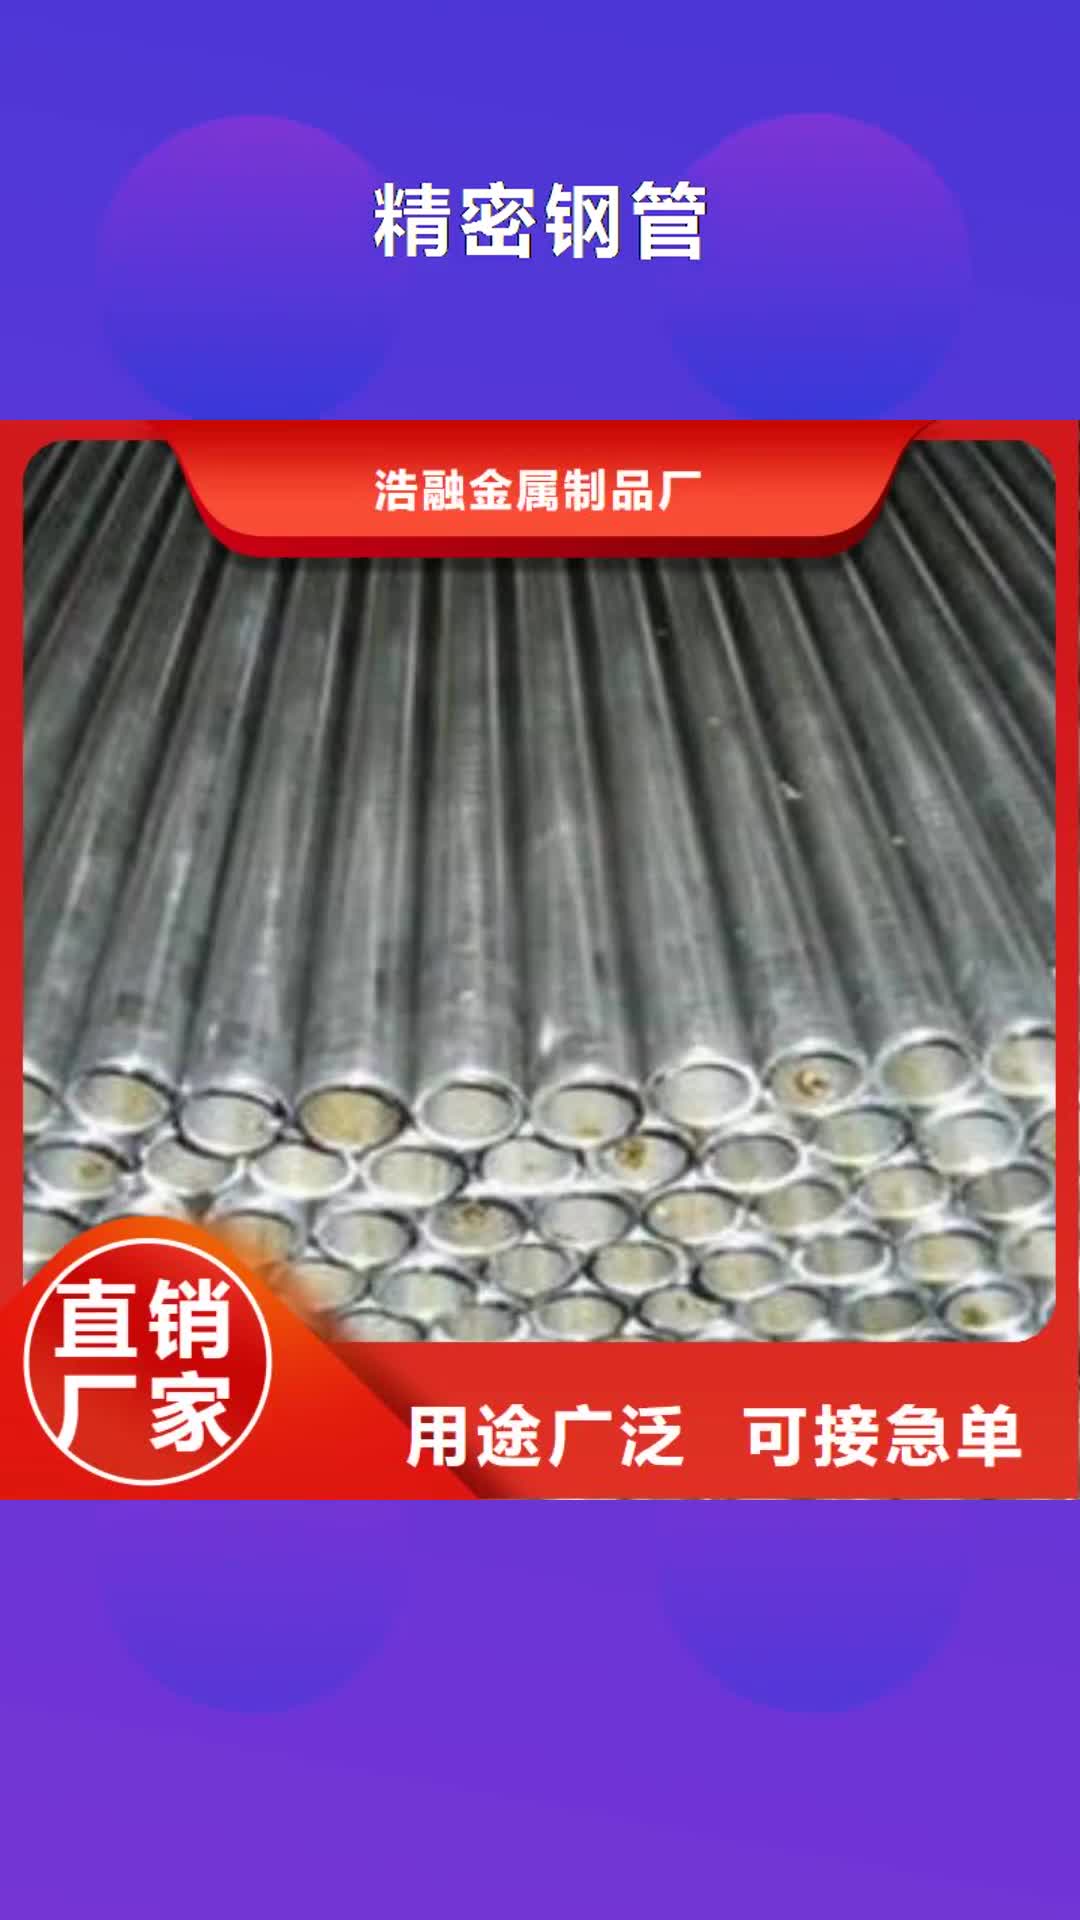 黑龙江【精密钢管】,异型无缝钢管畅销当地